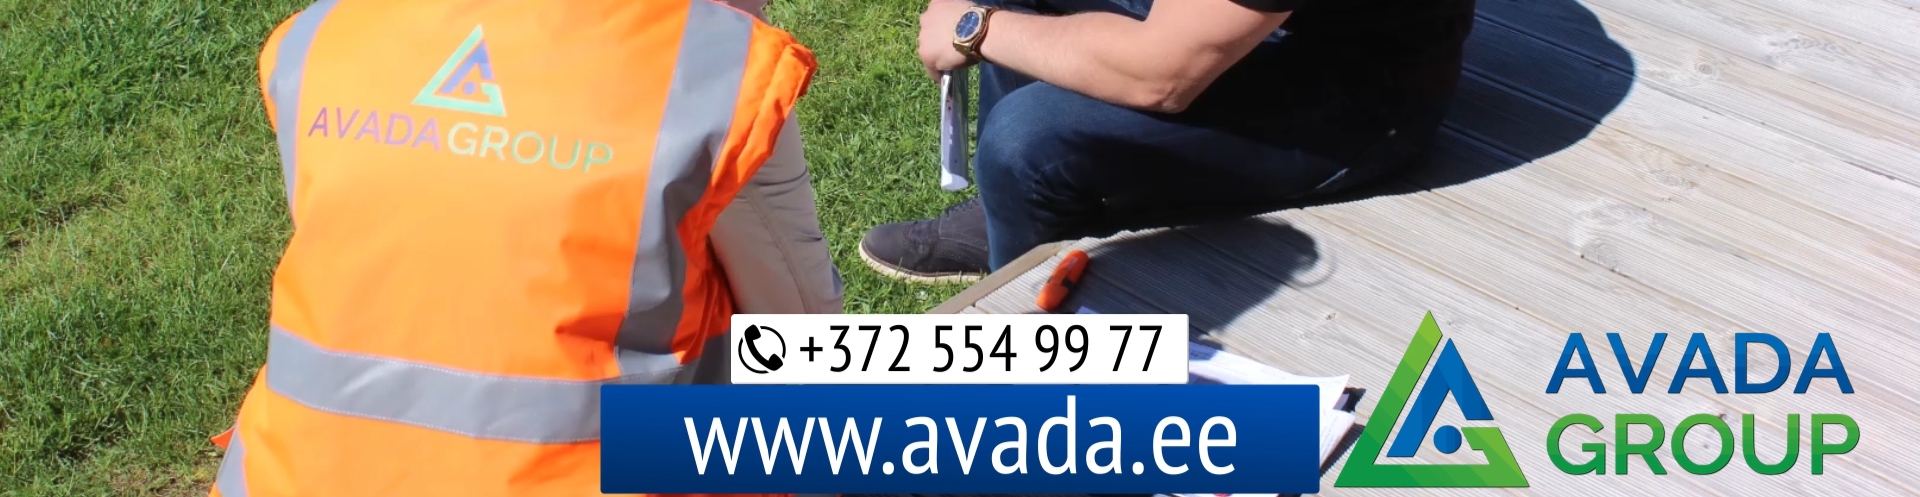 Suurim mainega ettevõte AVADA GROUP OÜ, maineskoor 580, aktiivseid äriseoseid 3. Tegutseb peamiselt valdkonnas: Maastiku hooldus- ja korrastustööd.